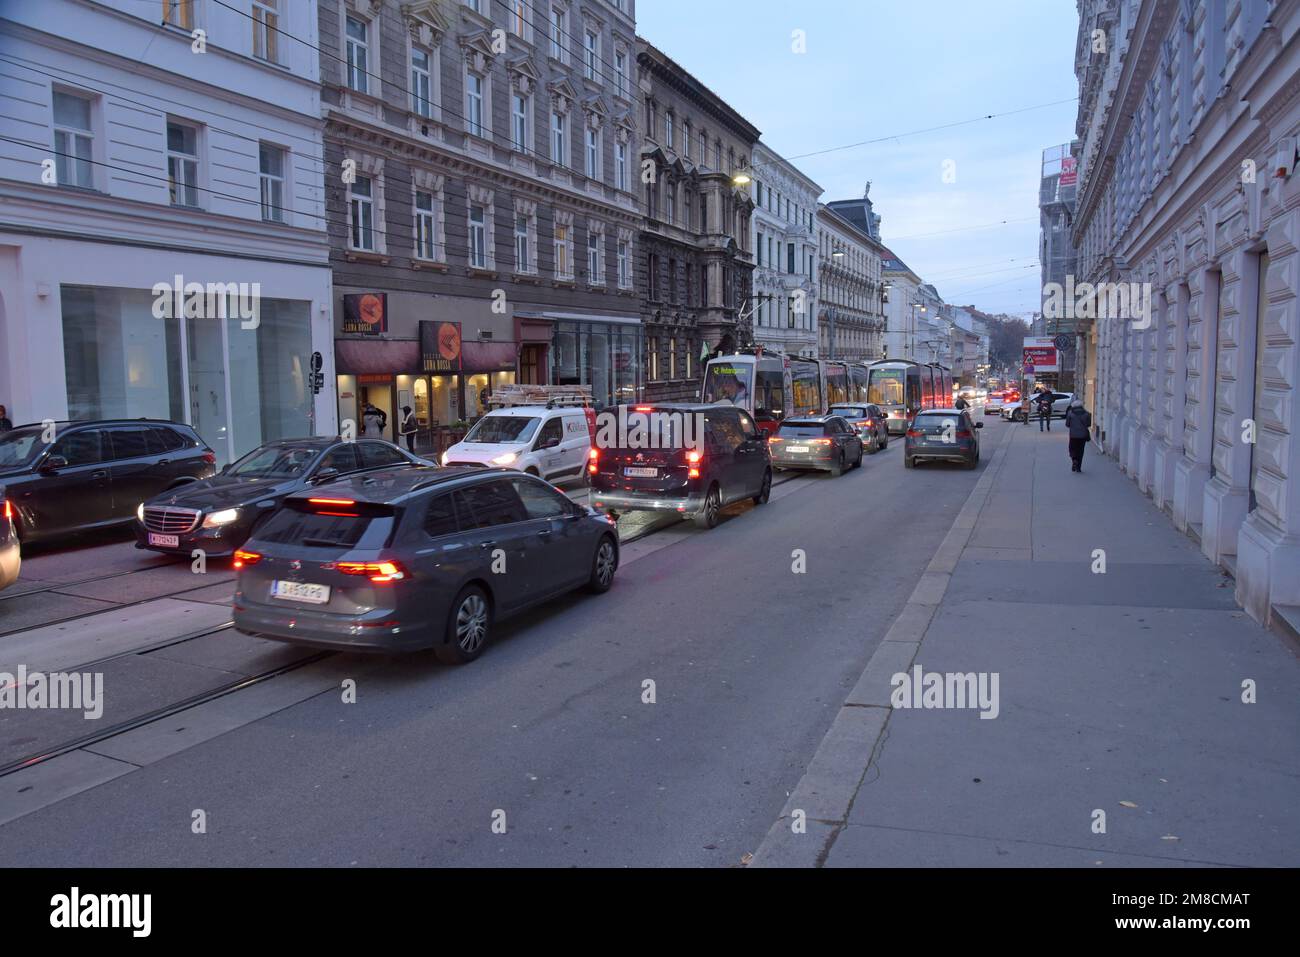 A Vienna tram jammed in rush hour traffic jam on Währinger Str, Vienna, Austria Stock Photo